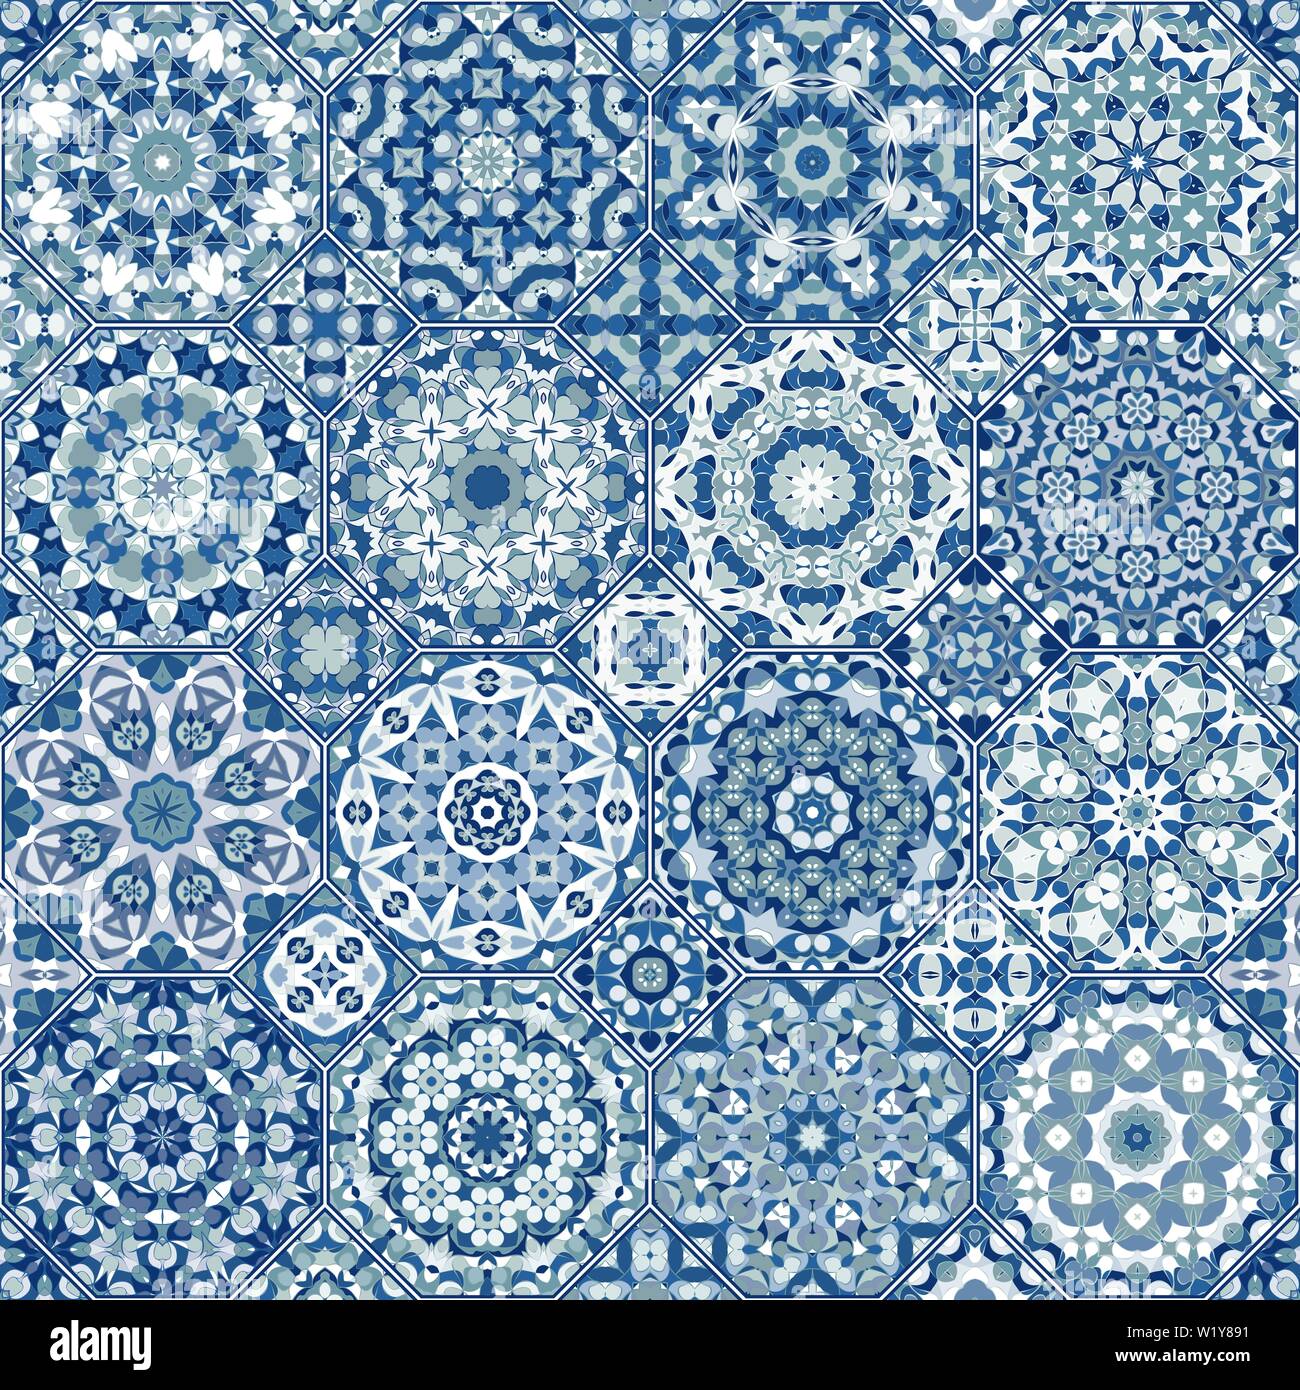 Vektor Sammlung von Square und achteckigen nahtlose Muster im orientalischen Stil. Eine Reihe von bunten Fliesen. Stock Vektor